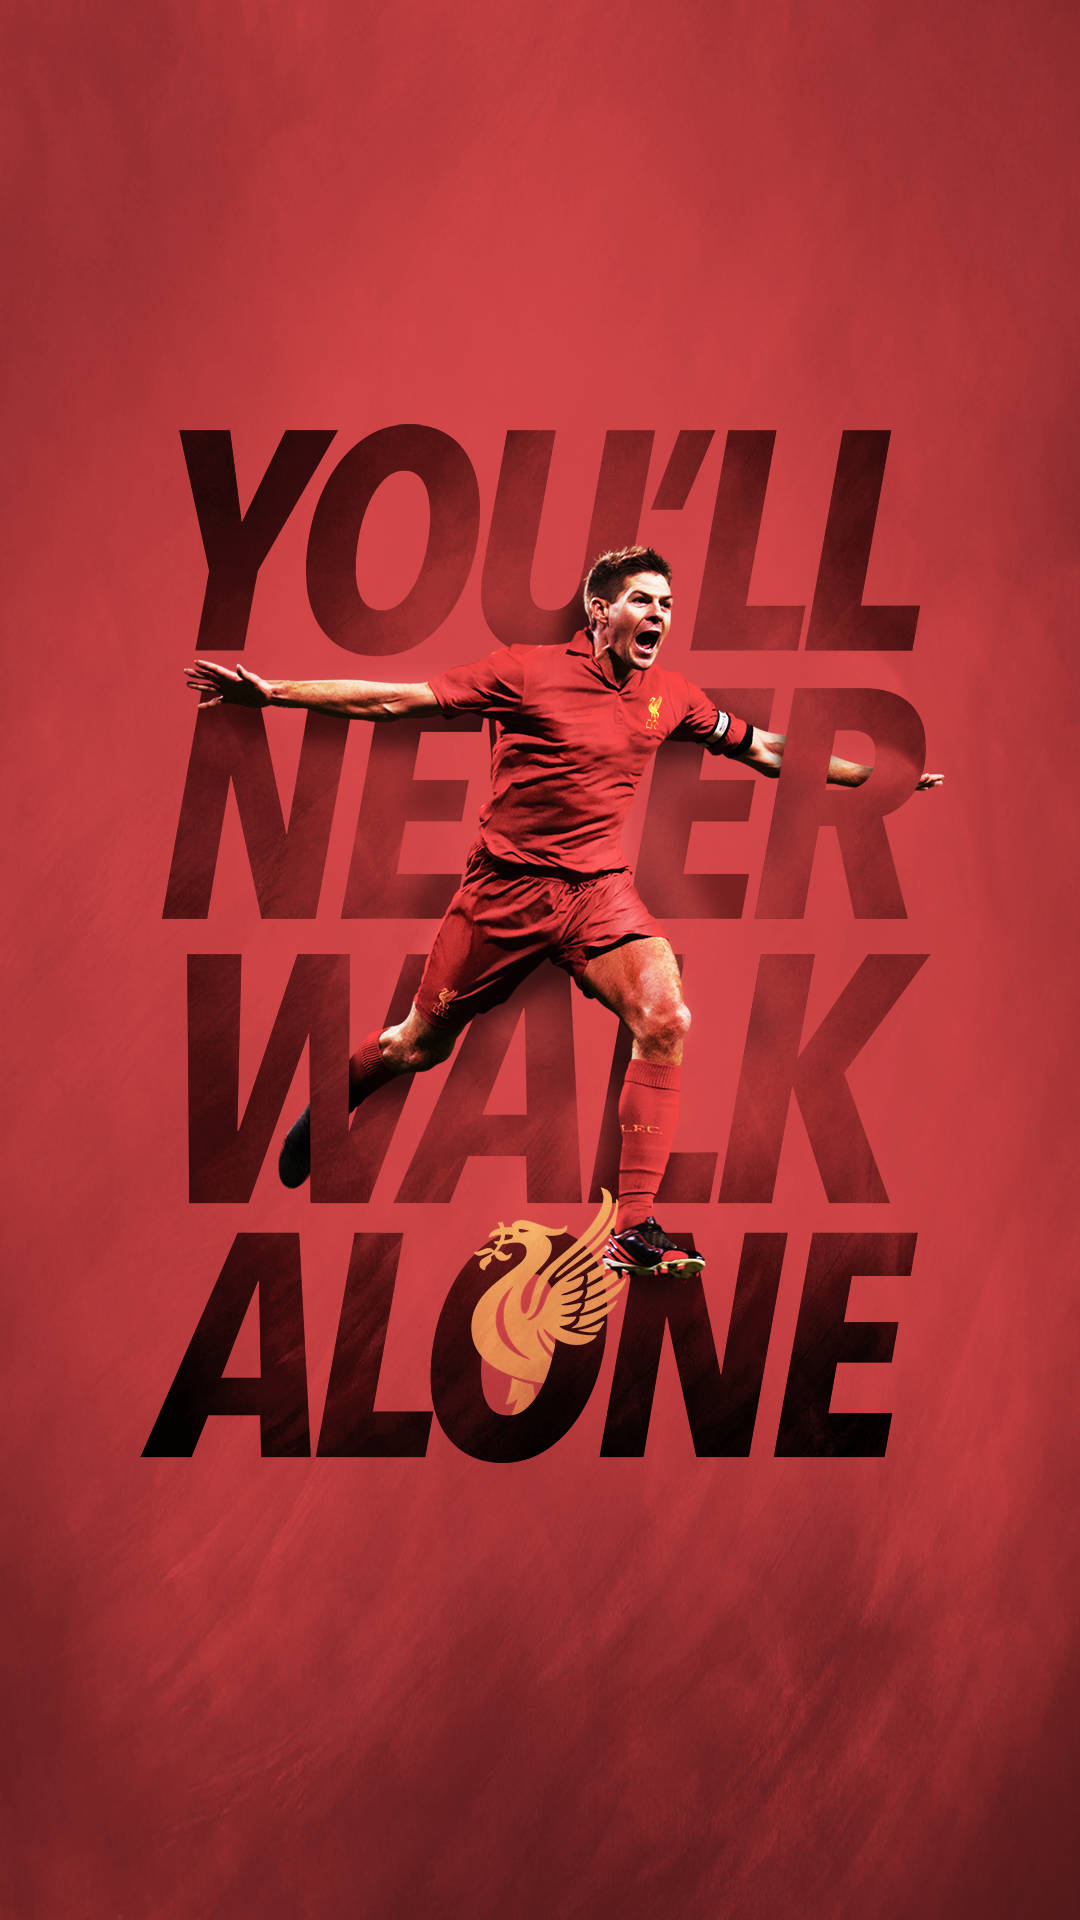 "Steven Gerrard - The Spirit of Liverpool" Wallpaper